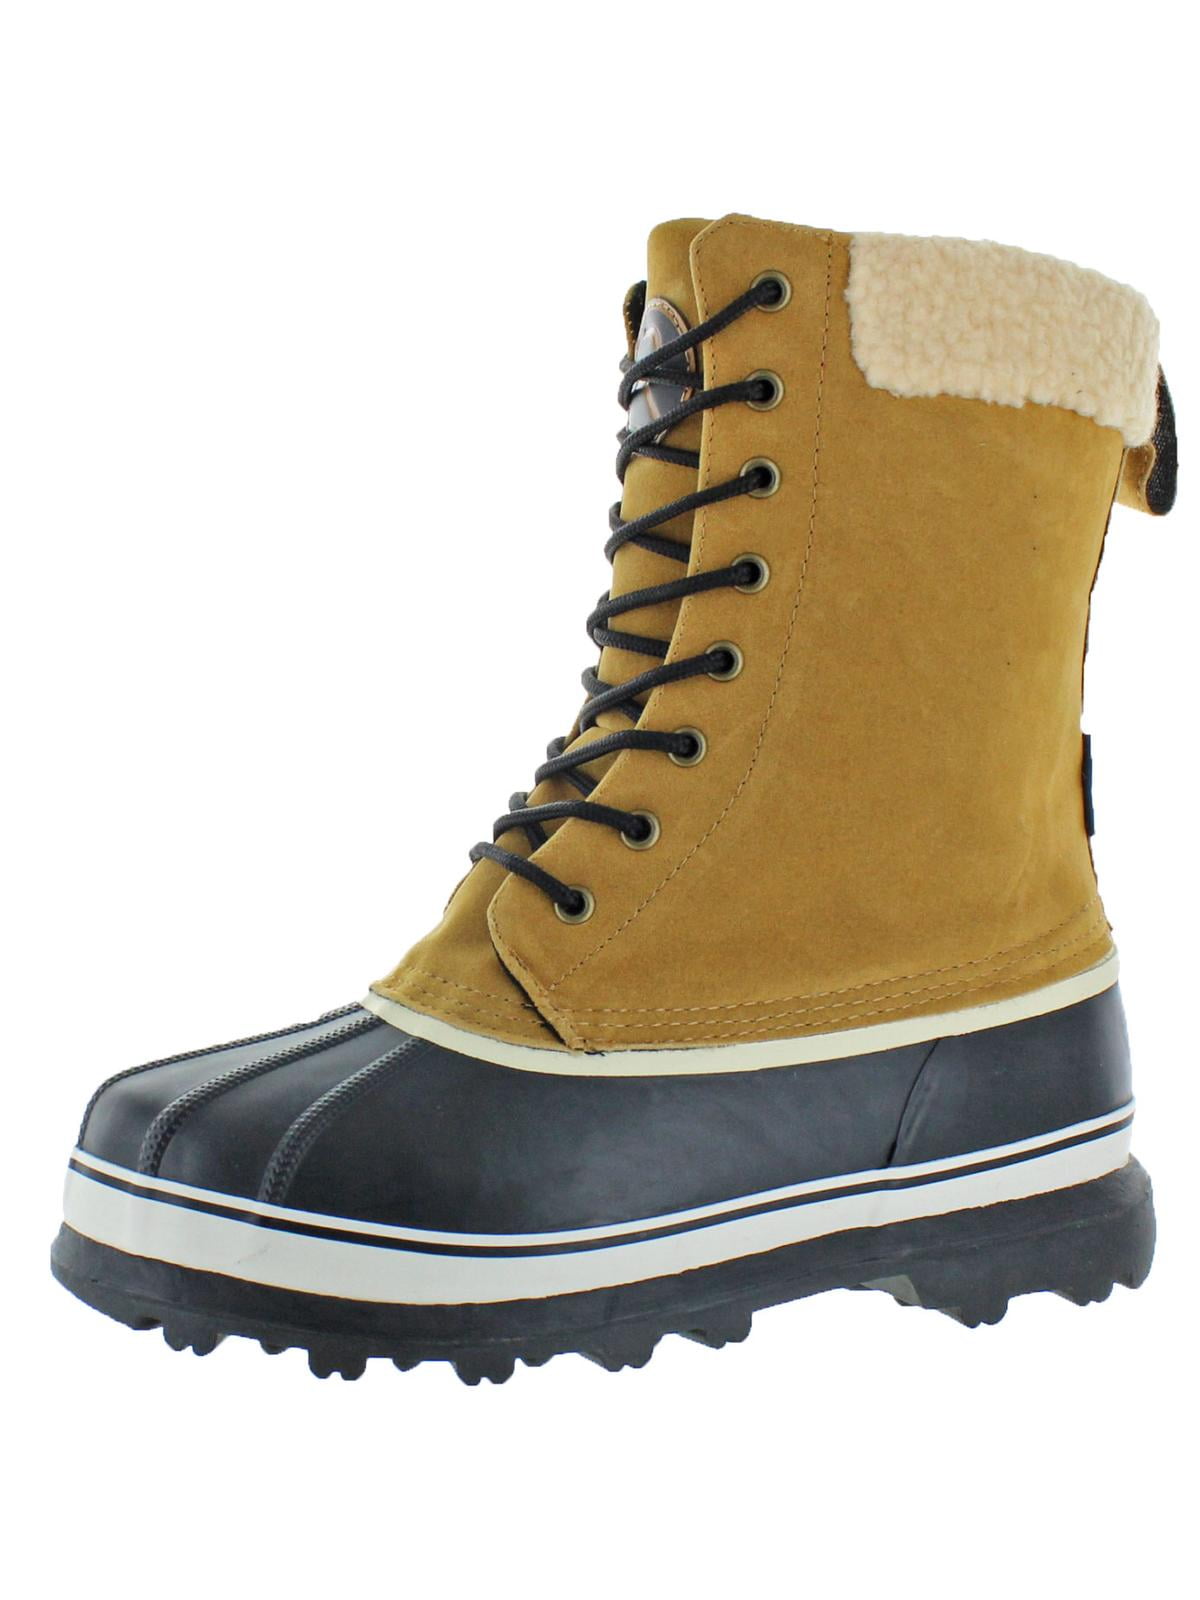 snow boots walmart mens